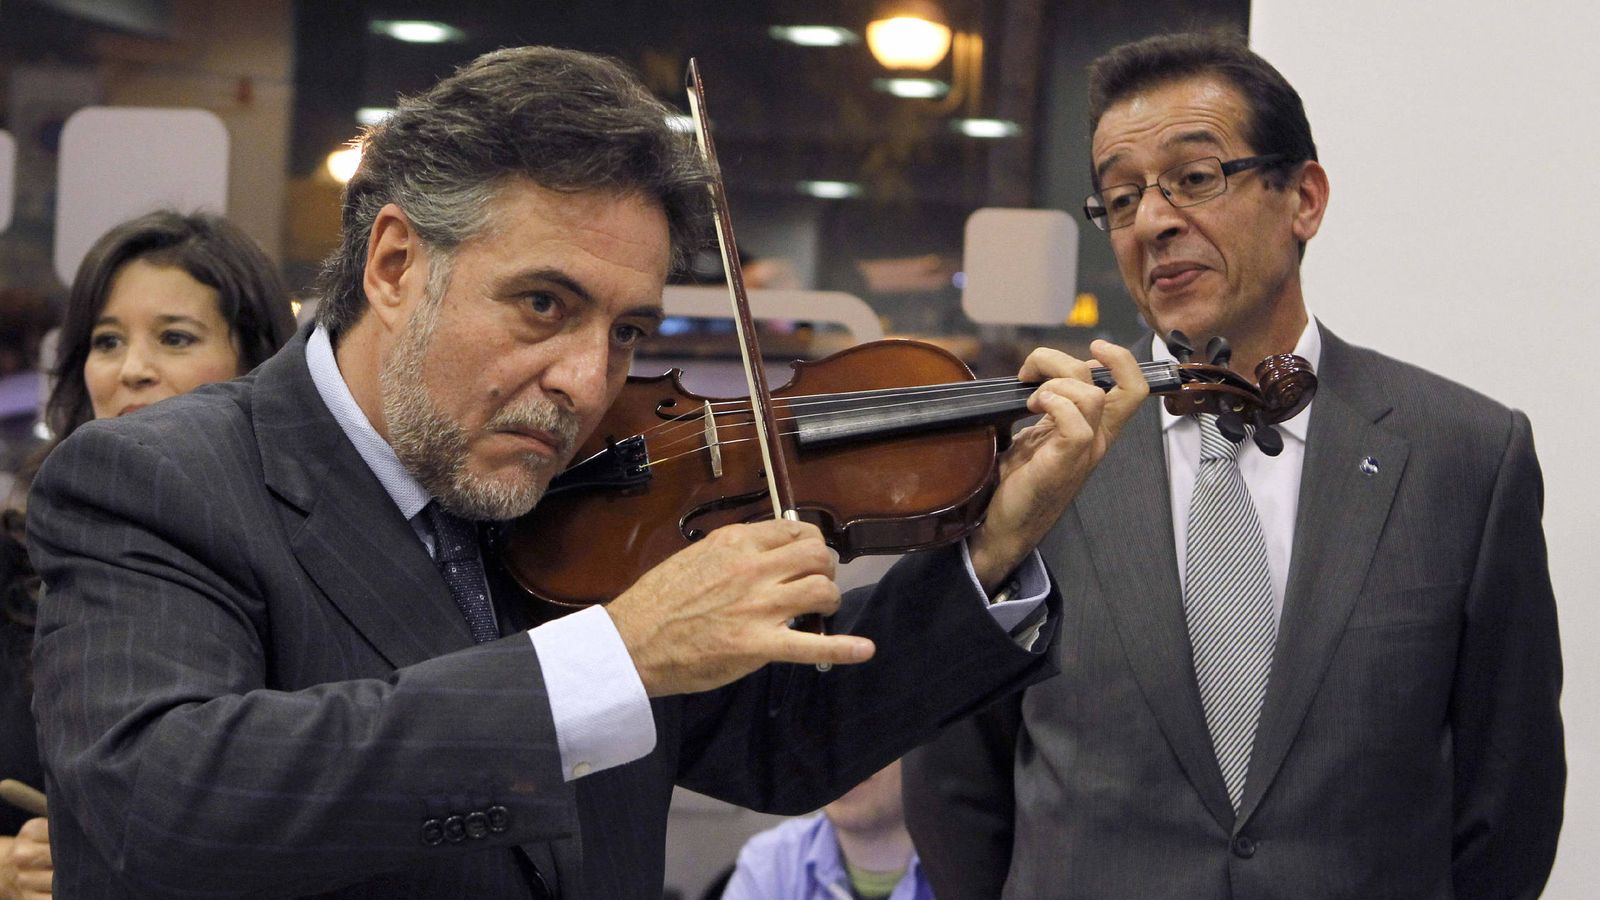 Foto: Pepu Hernández toca el violín durante una inauguración, en noviembre de 2011, en Madrid. (EFE)